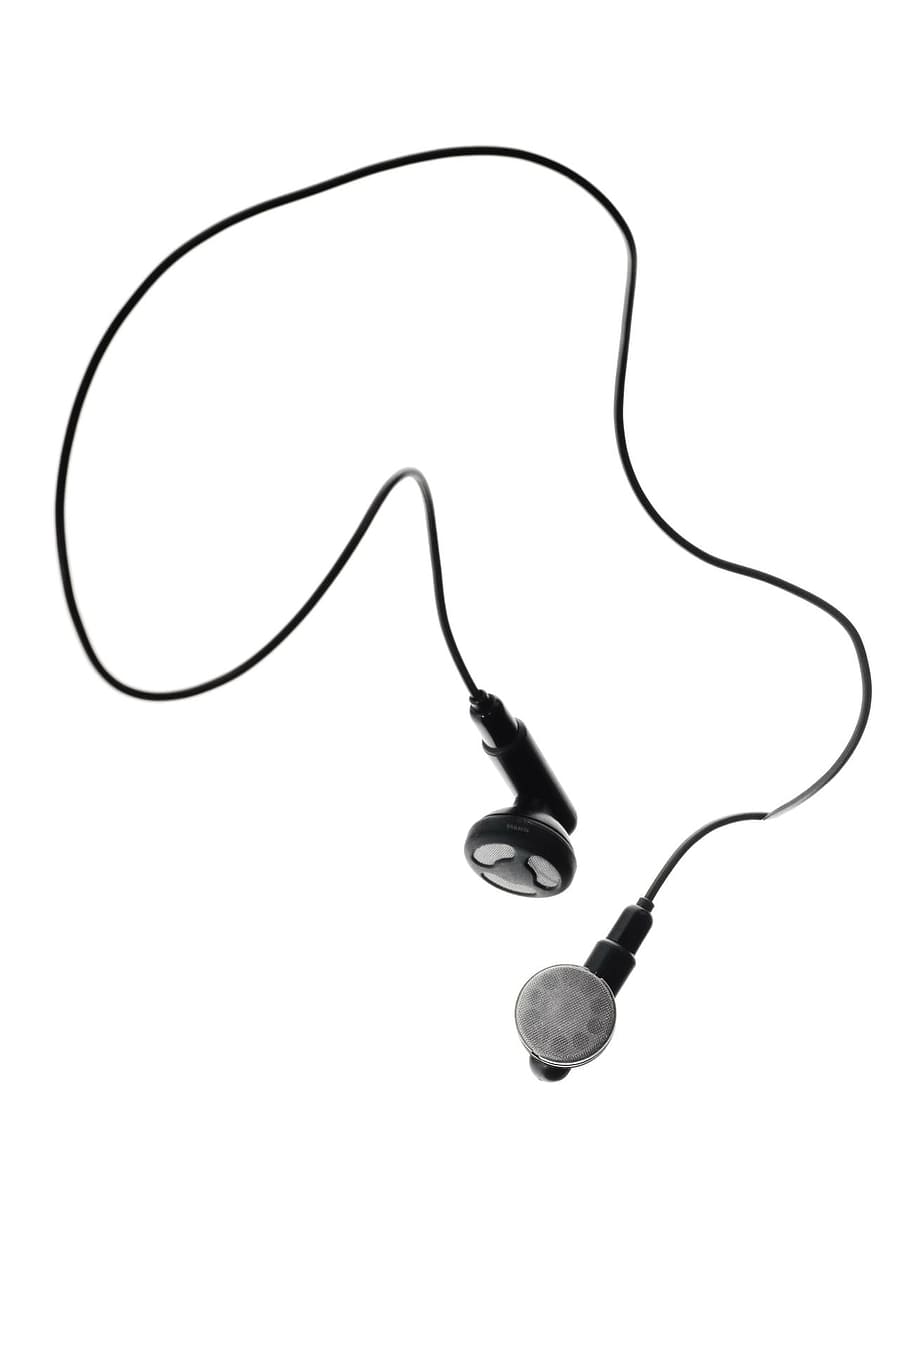 áudio, cabo, close-up, brinco, fones de ouvido, eletrônicos, isolado, parecer, branco, tecnologia